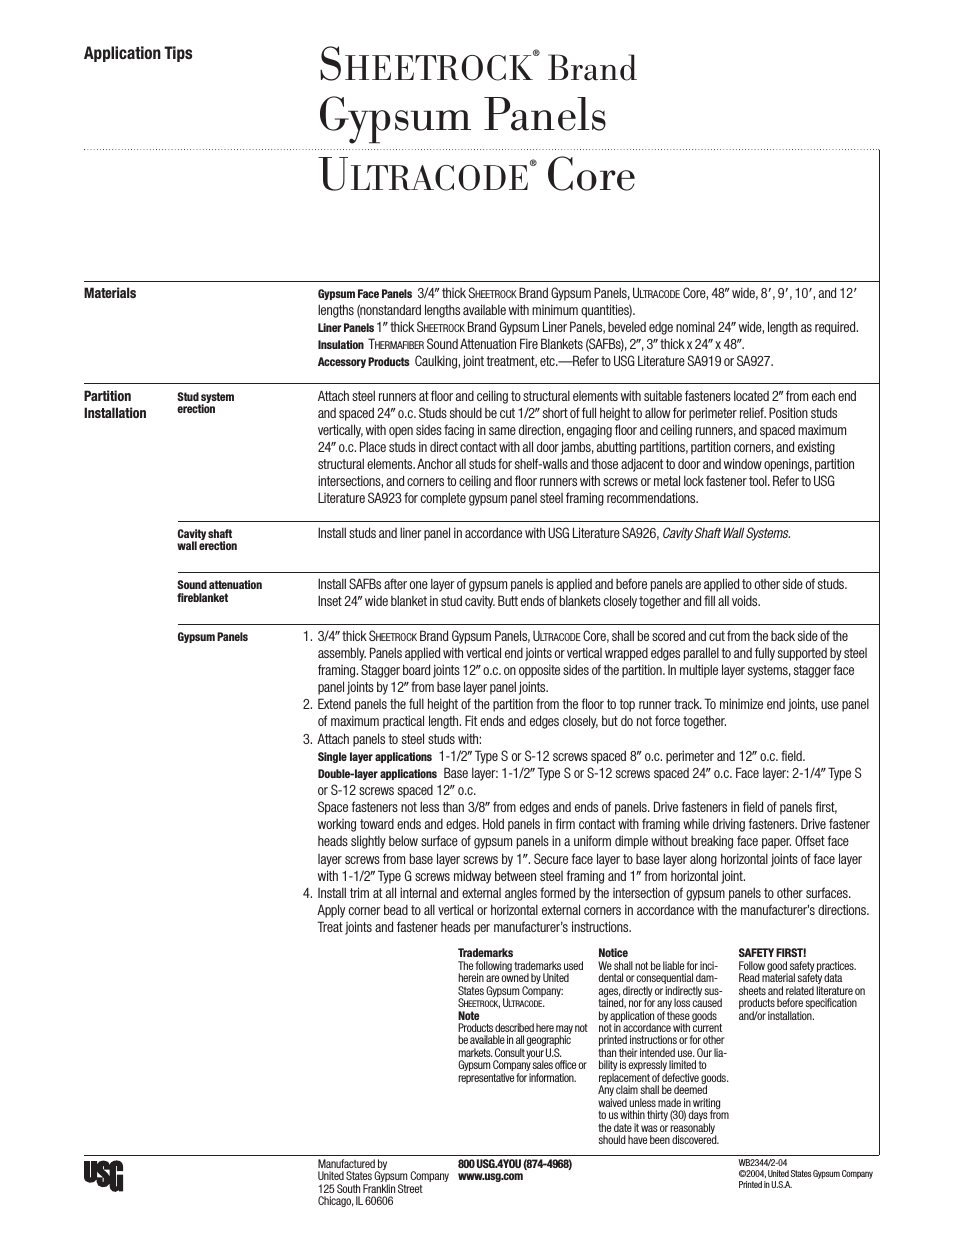 SHEETROCK Gypsum Panels ULTRACODE Core